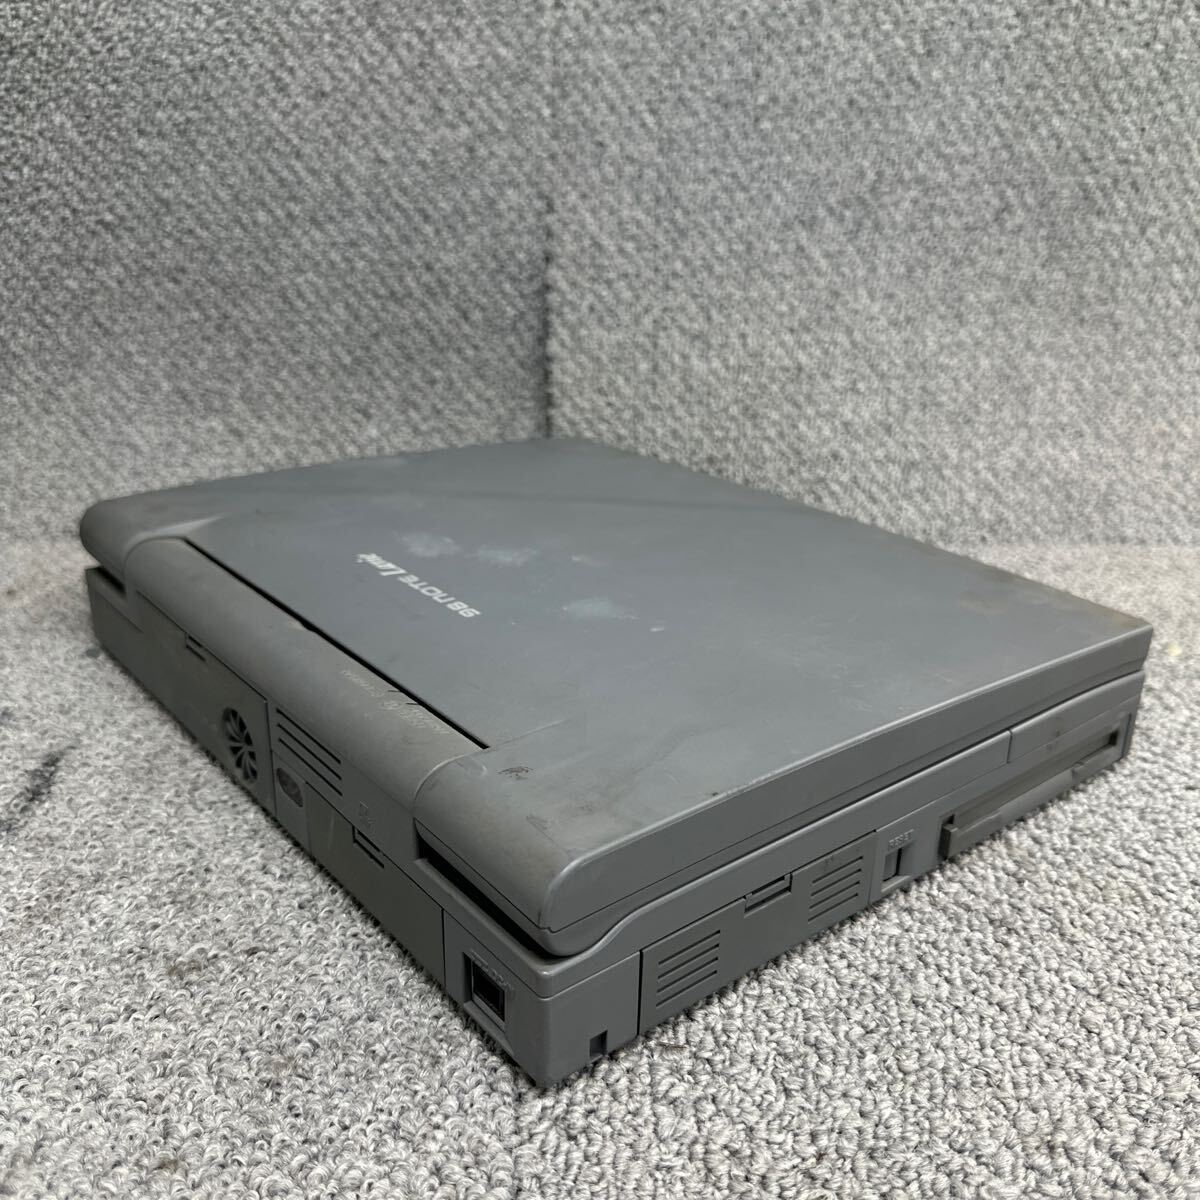 PCN98-1824 супер-скидка PC98 ноутбук NEC 98note Lavie PC-9821Na12/S10F пуск подтверждено Junk включение в покупку возможность 